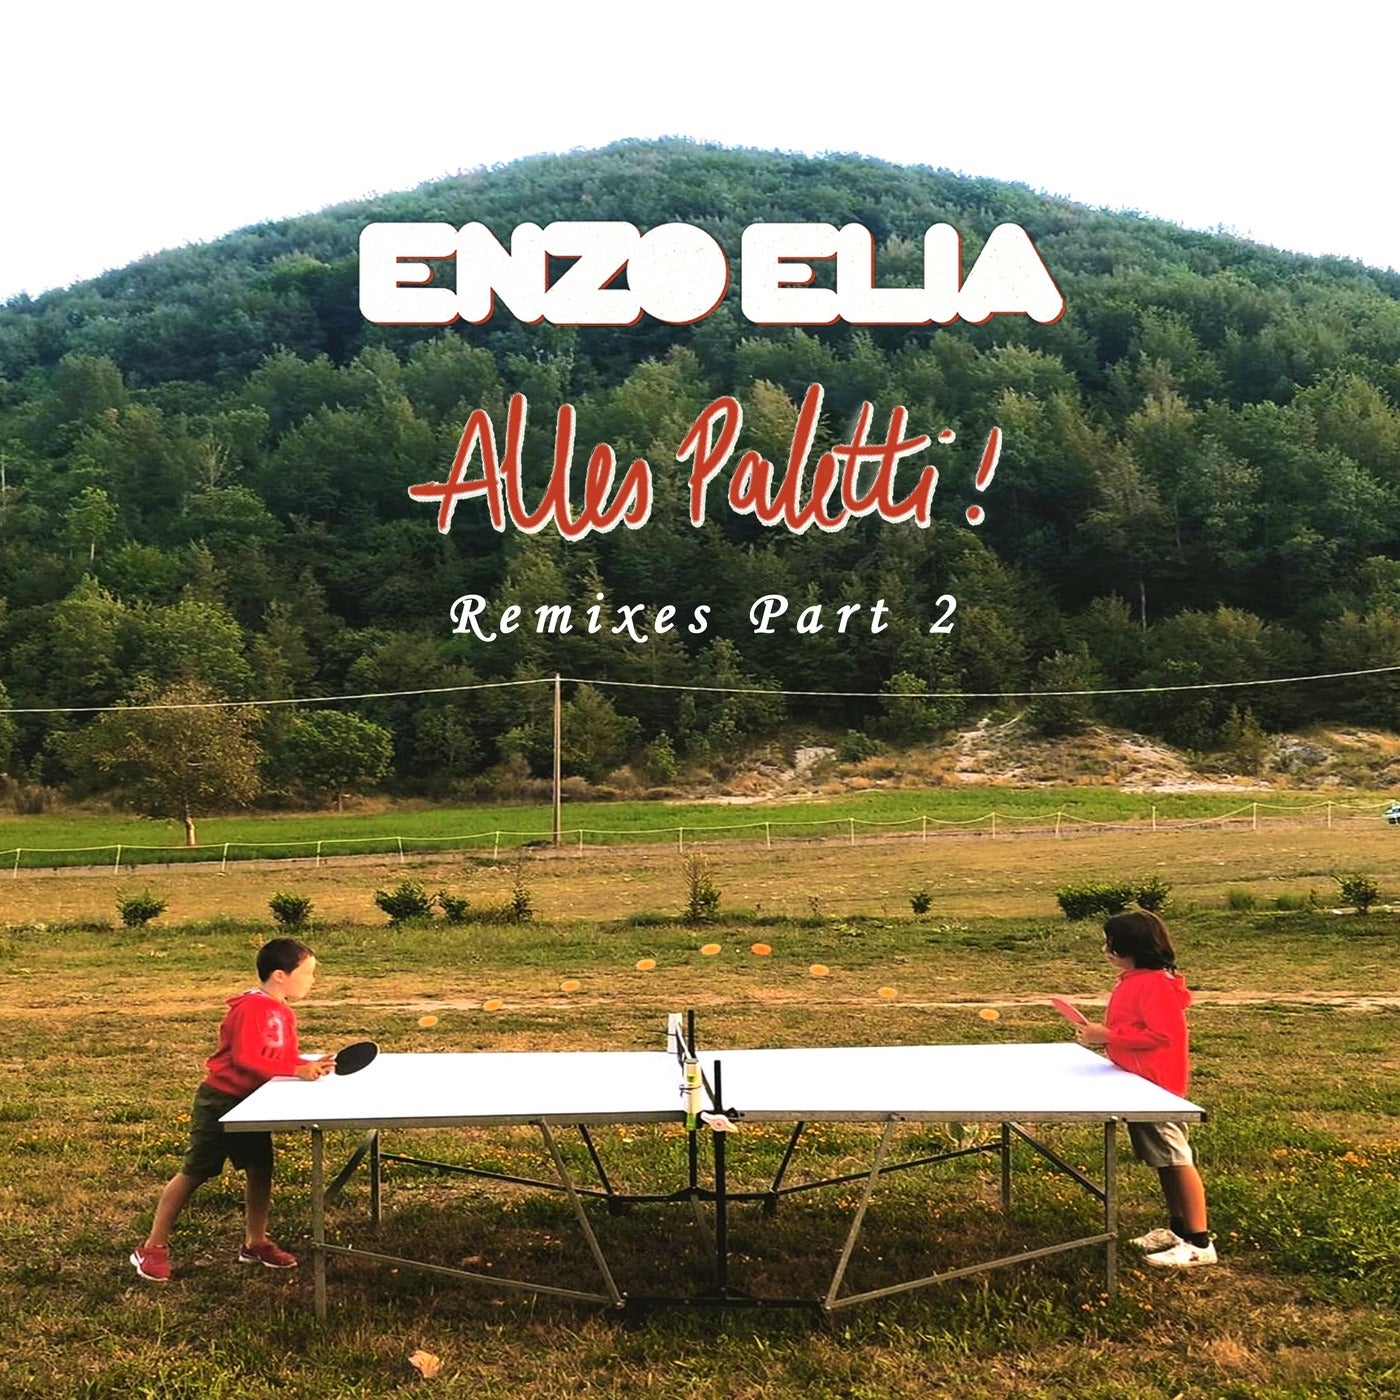 image cover: Enzo Elia - Alles Paletti Remixes, Pt. 2 / BUTS20